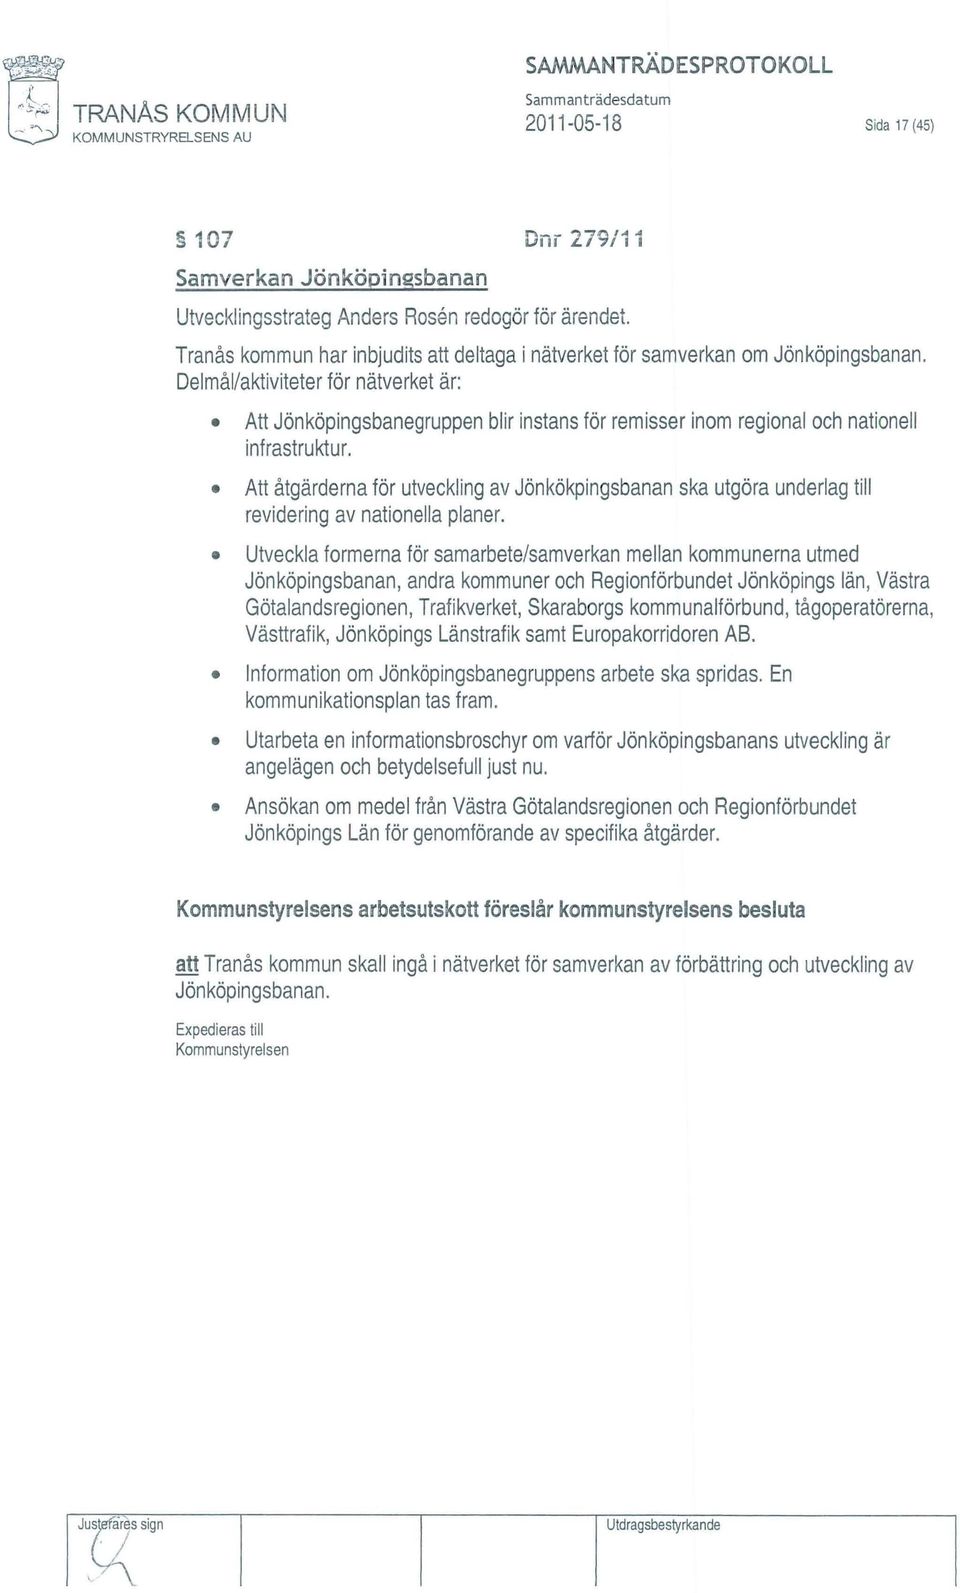 Tranås kommun har inbjudits att deltaga i nätverket för samverkan om Jönköpingsbanan.